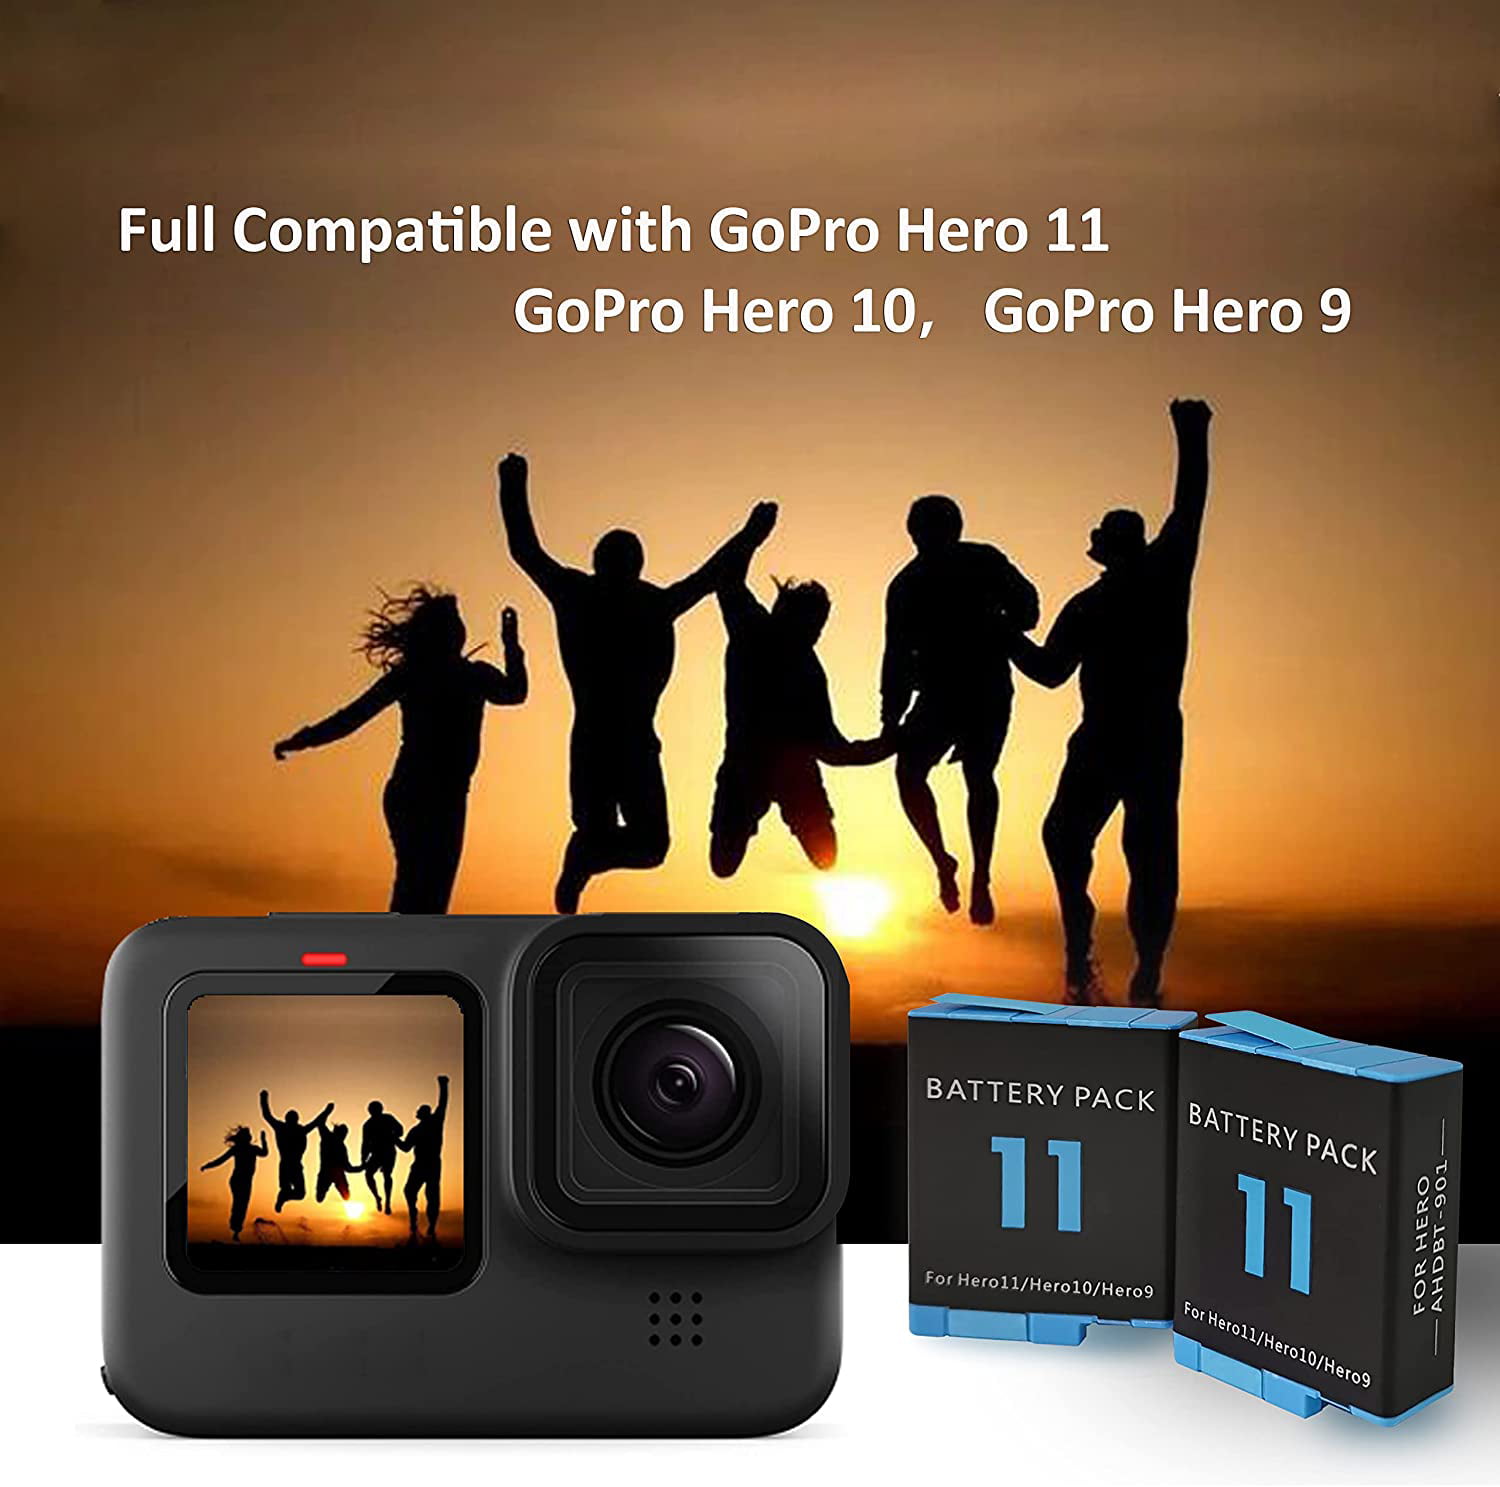 Lot de 3 batteries Hero 11 pour GoPro Hero 11, GoPro Hero 10